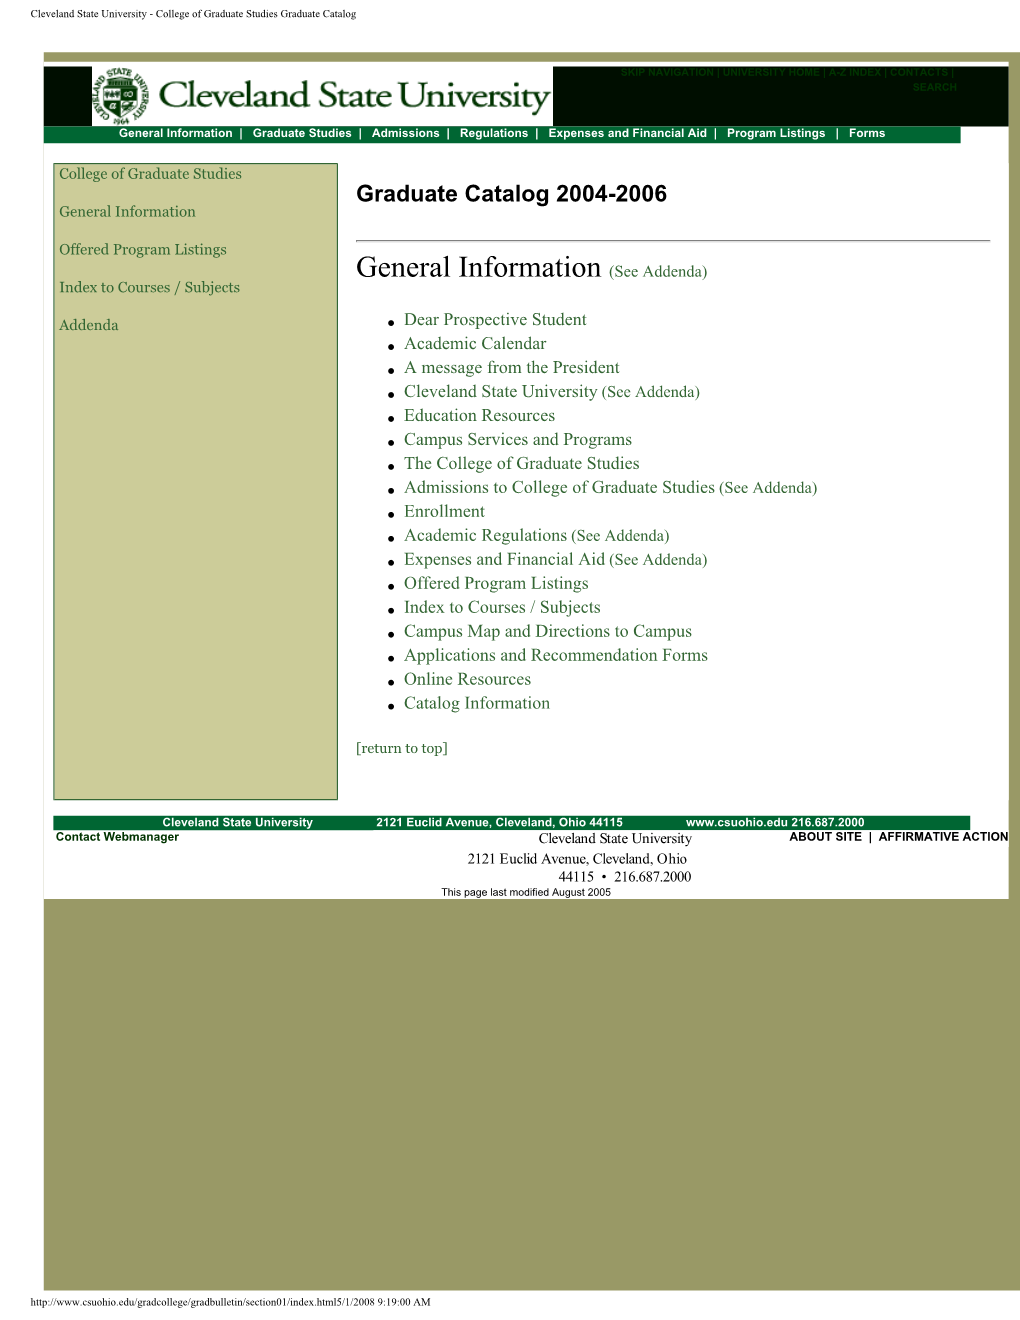 College of Graduate Studies Graduate Catalog